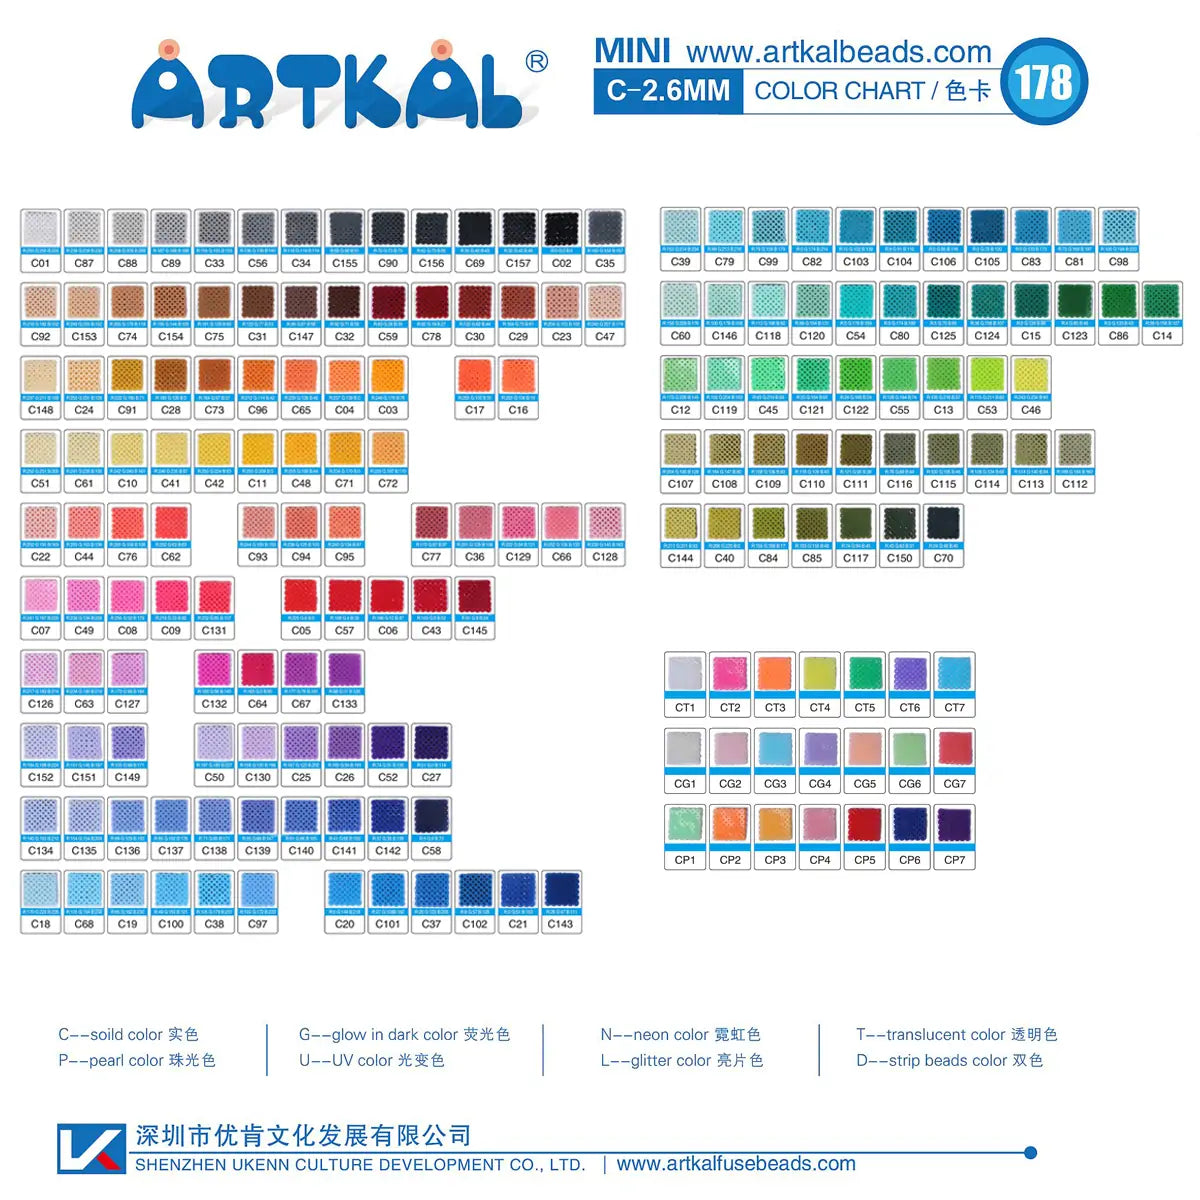 Choisissez les couleurs gratuites 2000 perles/sac 10 sacs Mini perles Artkal C-2.6mm CB2000-10